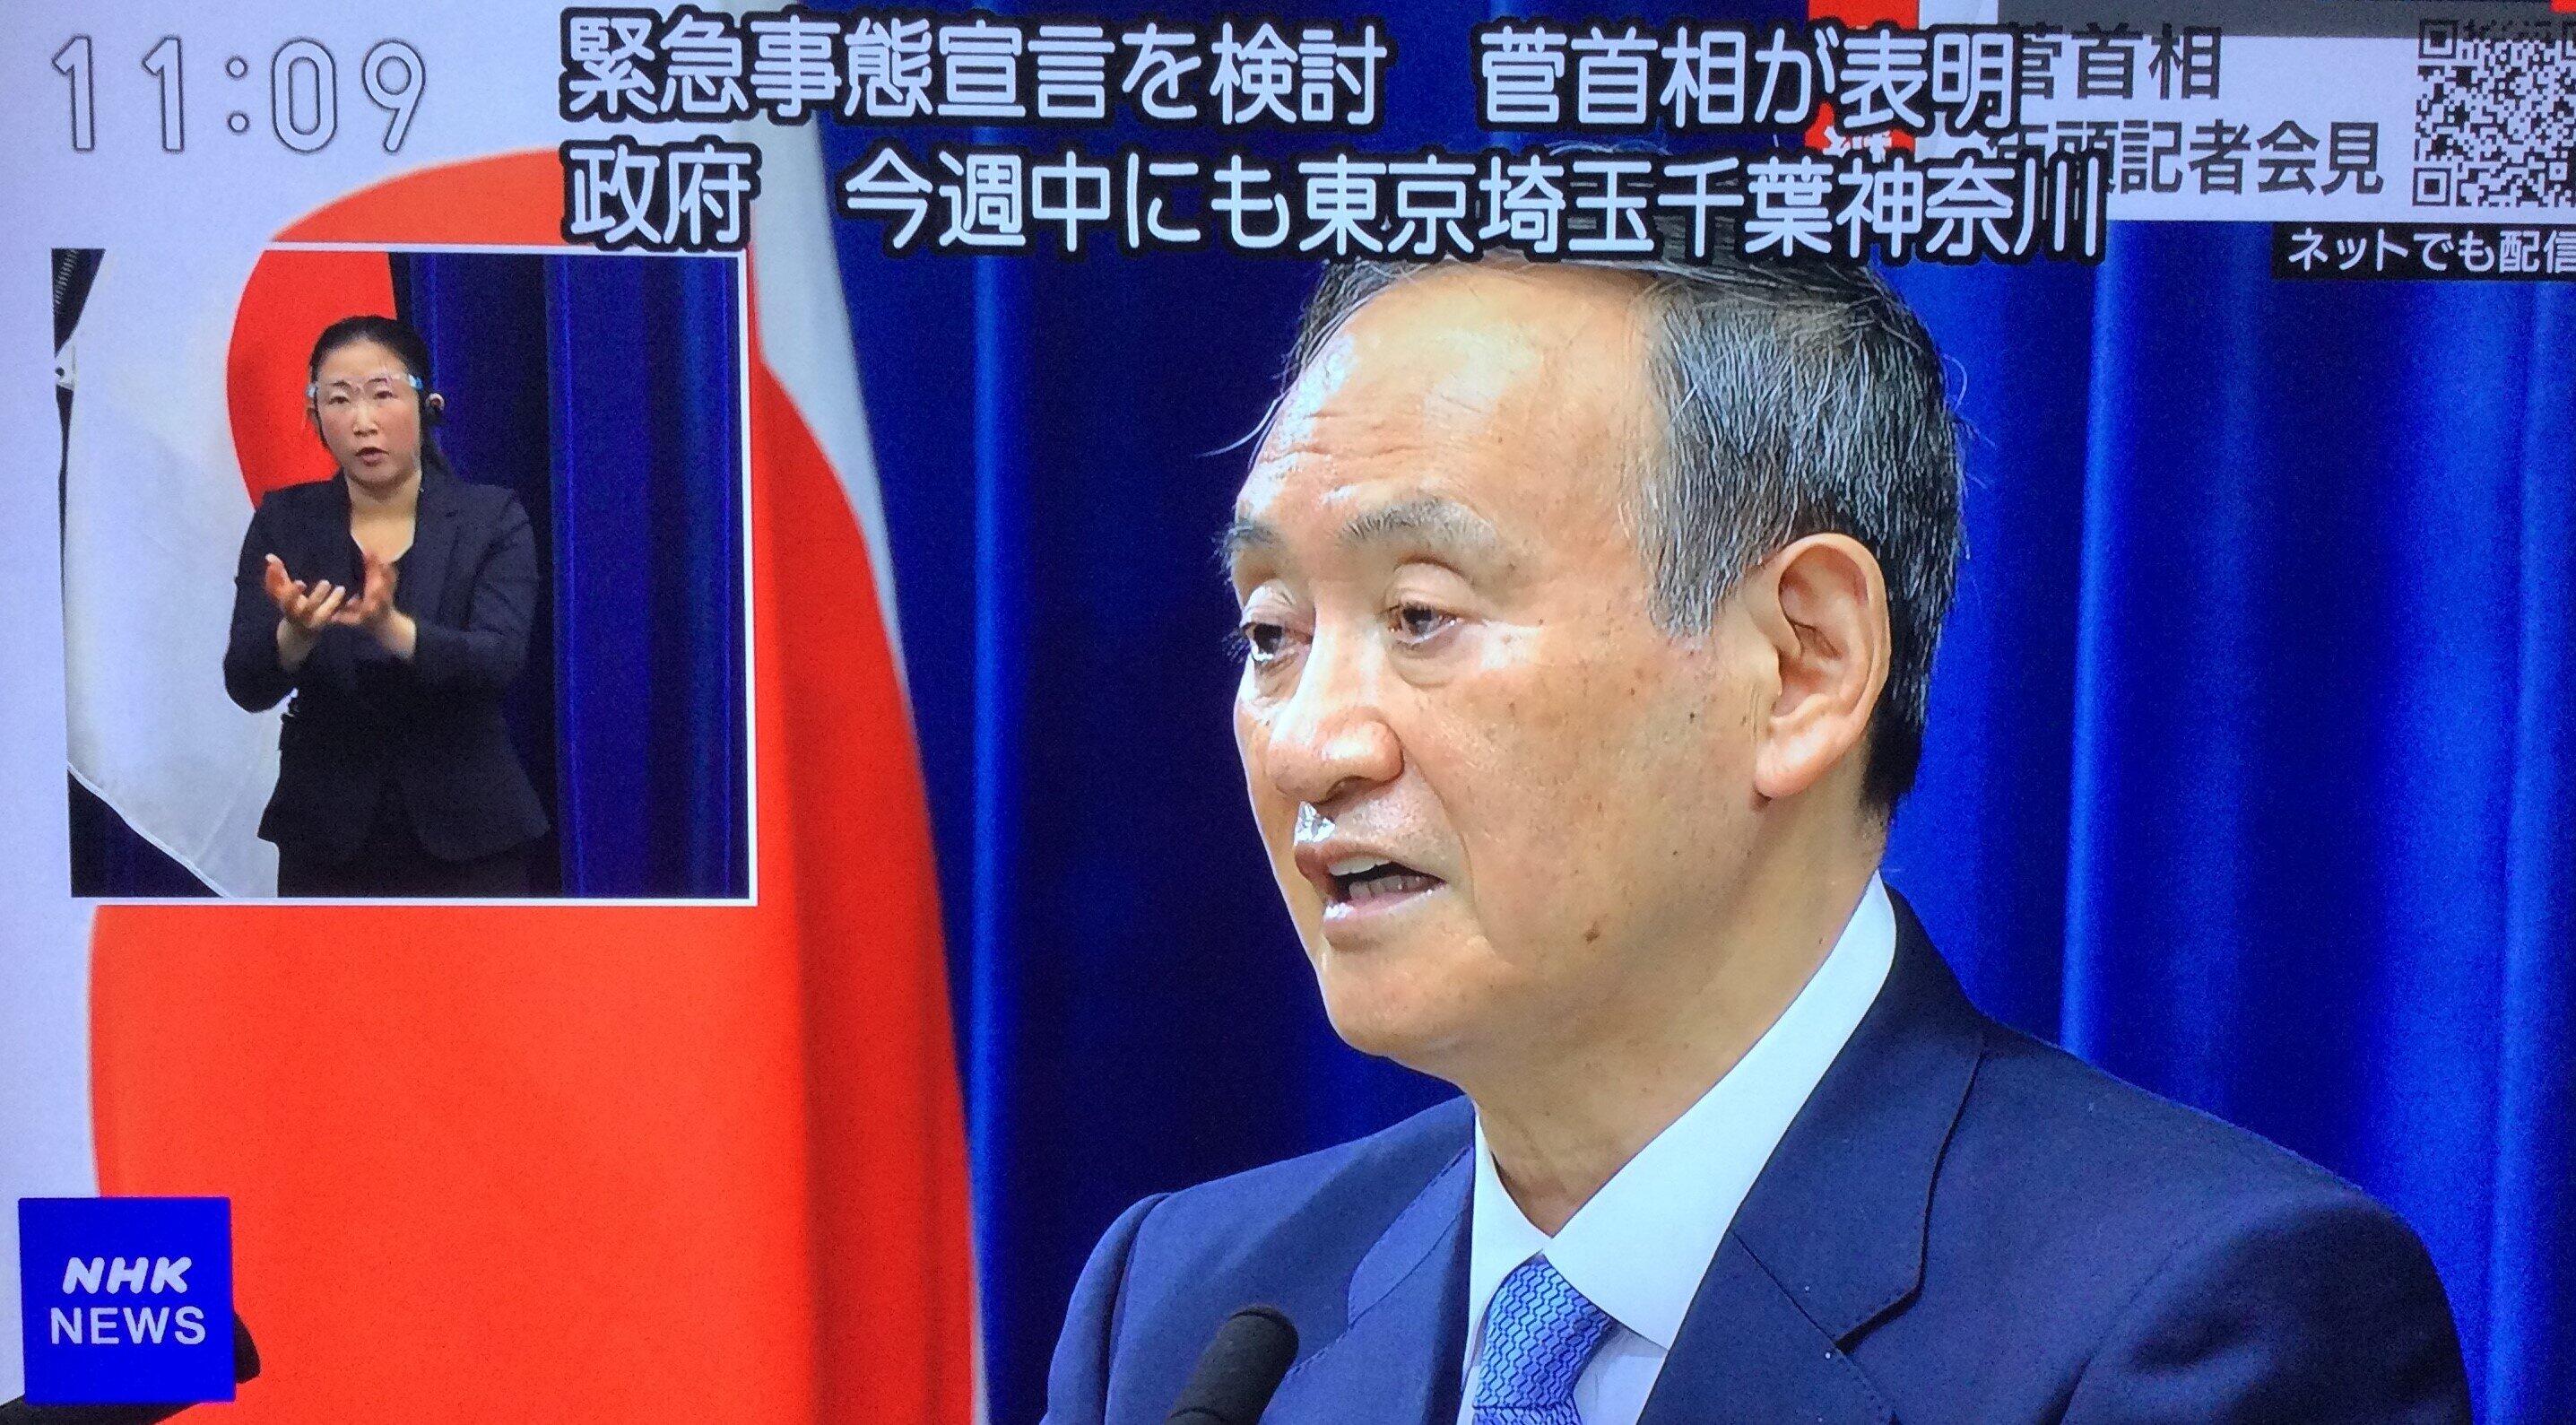 結局「検討する」としか言わなかった菅義偉首相（1月4日のNHKテレビニュース）

